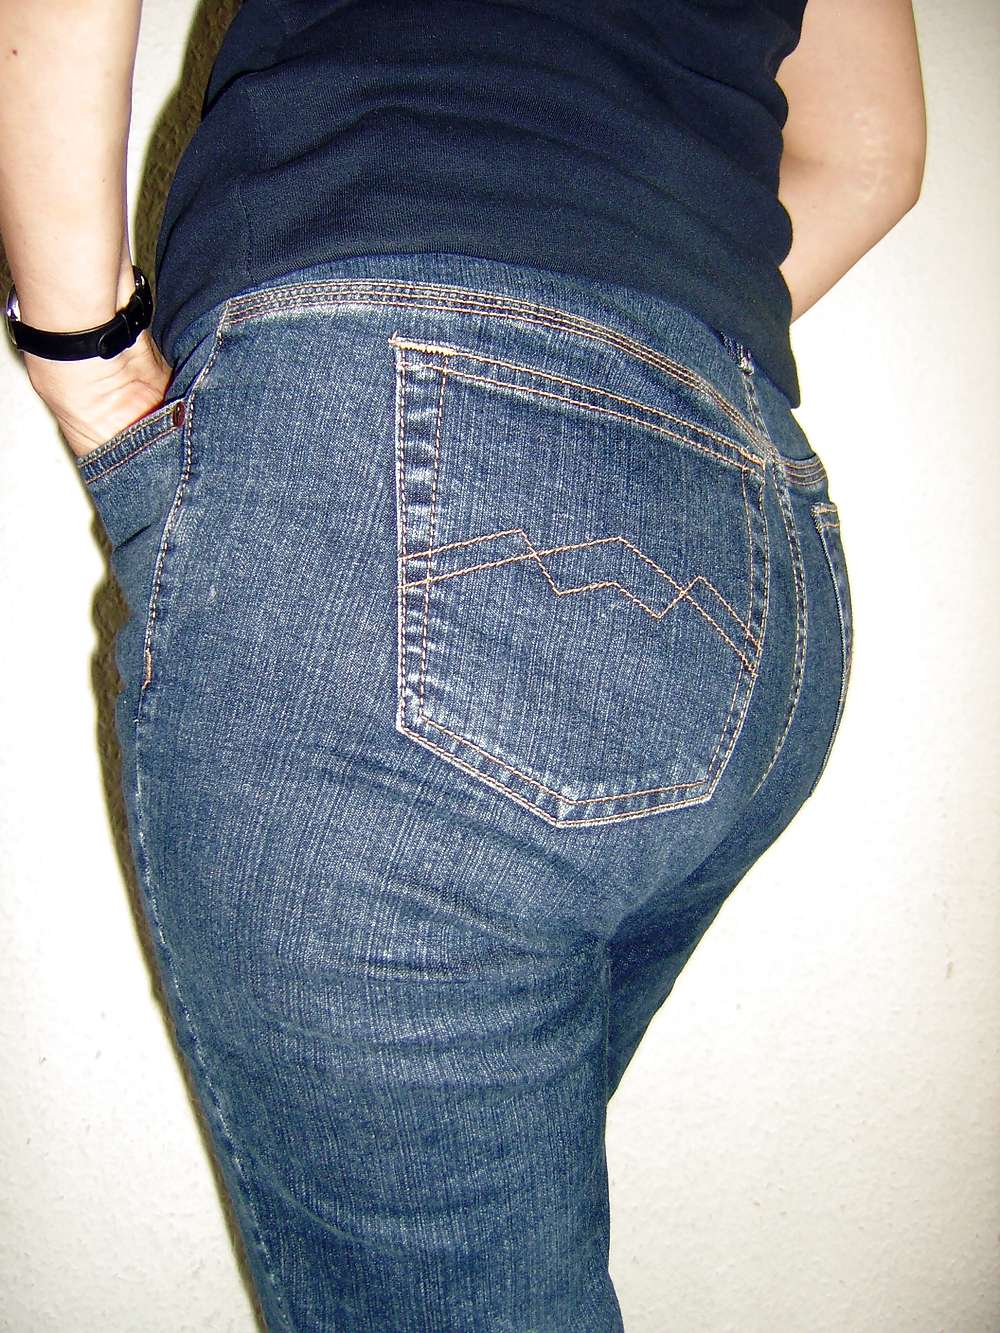 Gros Cul Matures Ferme En Jeans #22593400